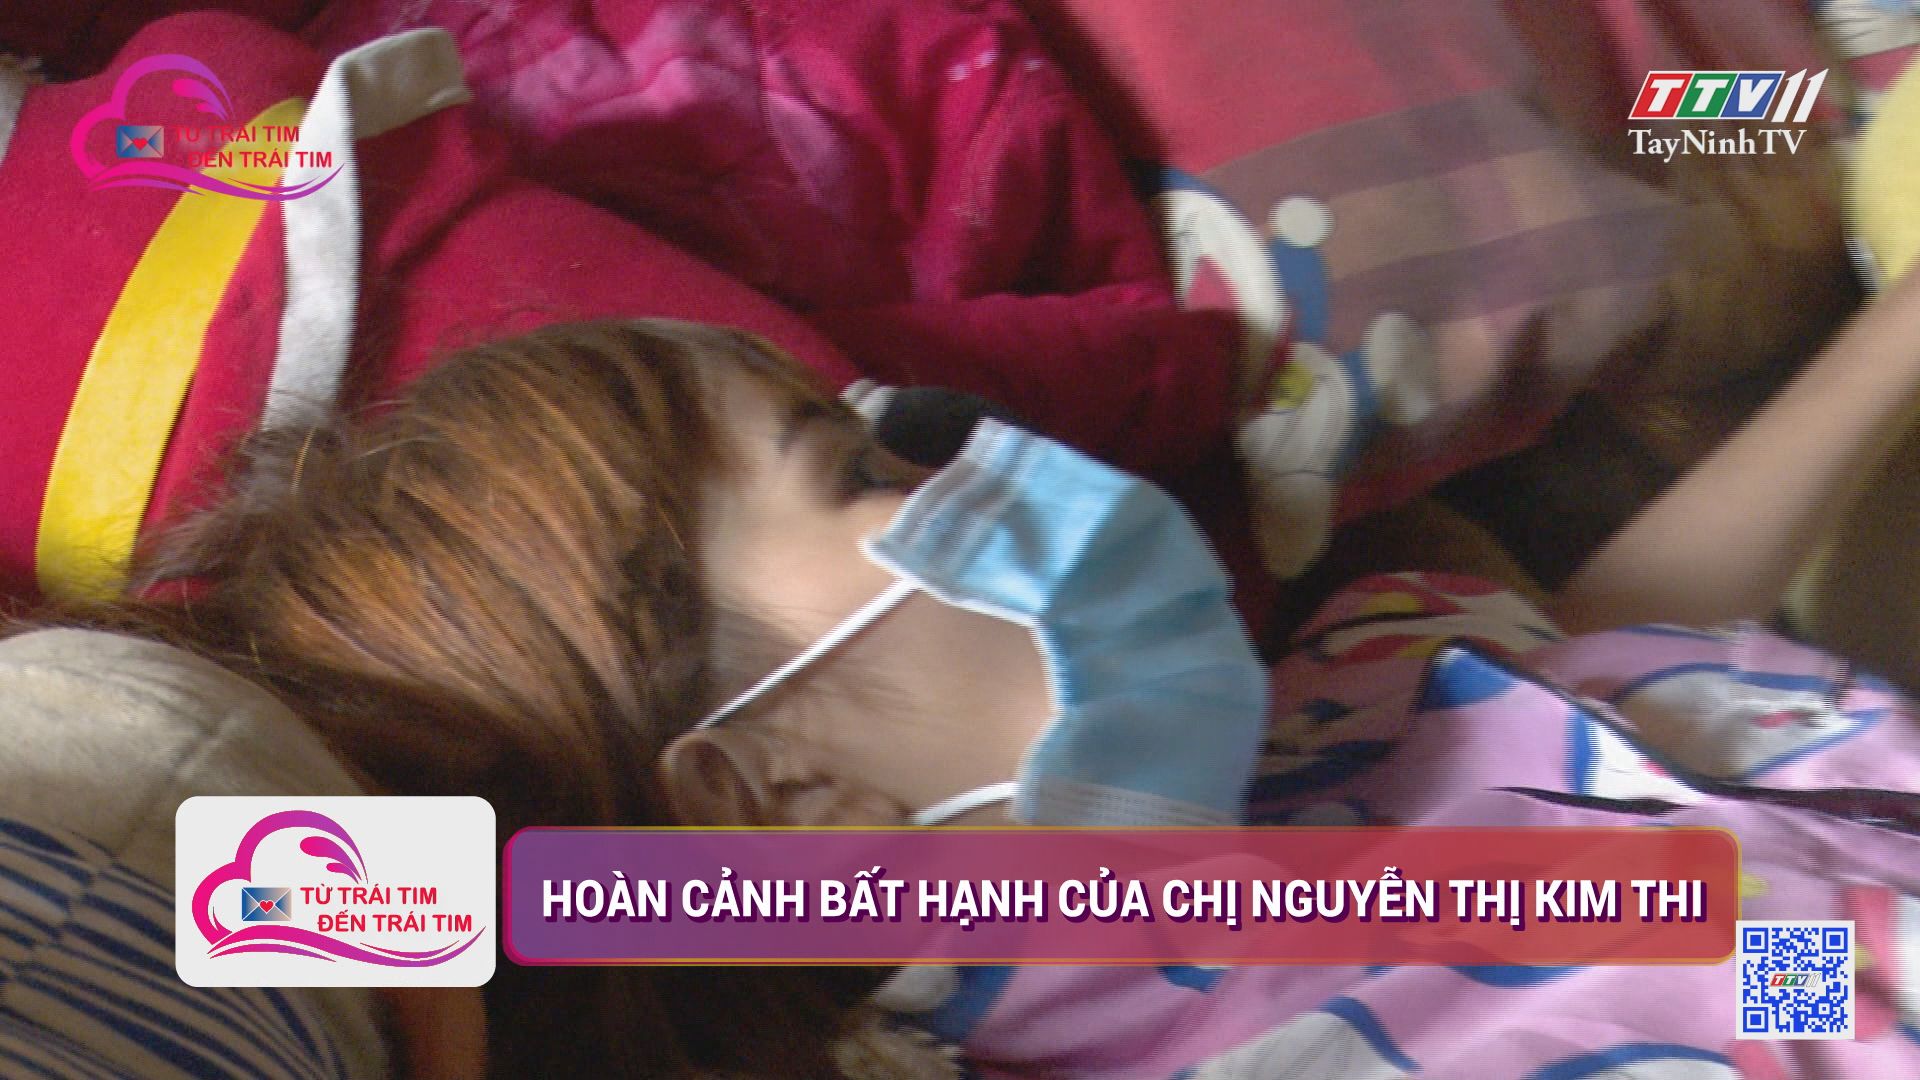 Hoàn cảnh bất hạnh của chị Nguyễn Thị Kim Thi | TỪ TRÁI TIM ĐẾN TRÁI TIM | TayNinhTV